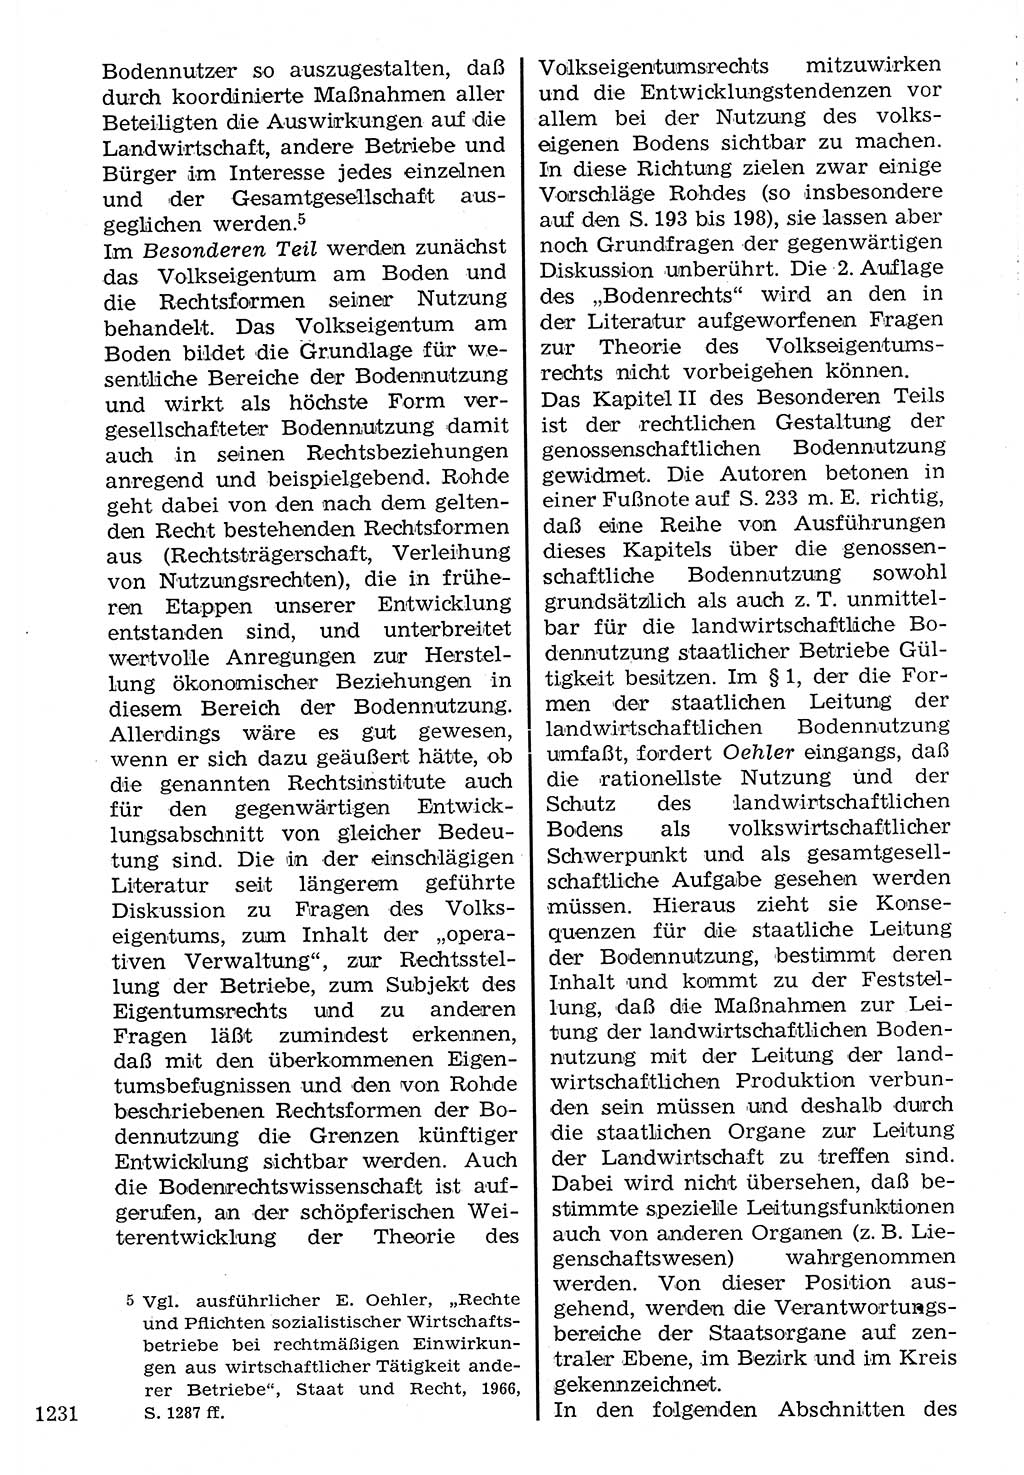 Staat und Recht (StuR), 17. Jahrgang [Deutsche Demokratische Republik (DDR)] 1968, Seite 1231 (StuR DDR 1968, S. 1231)